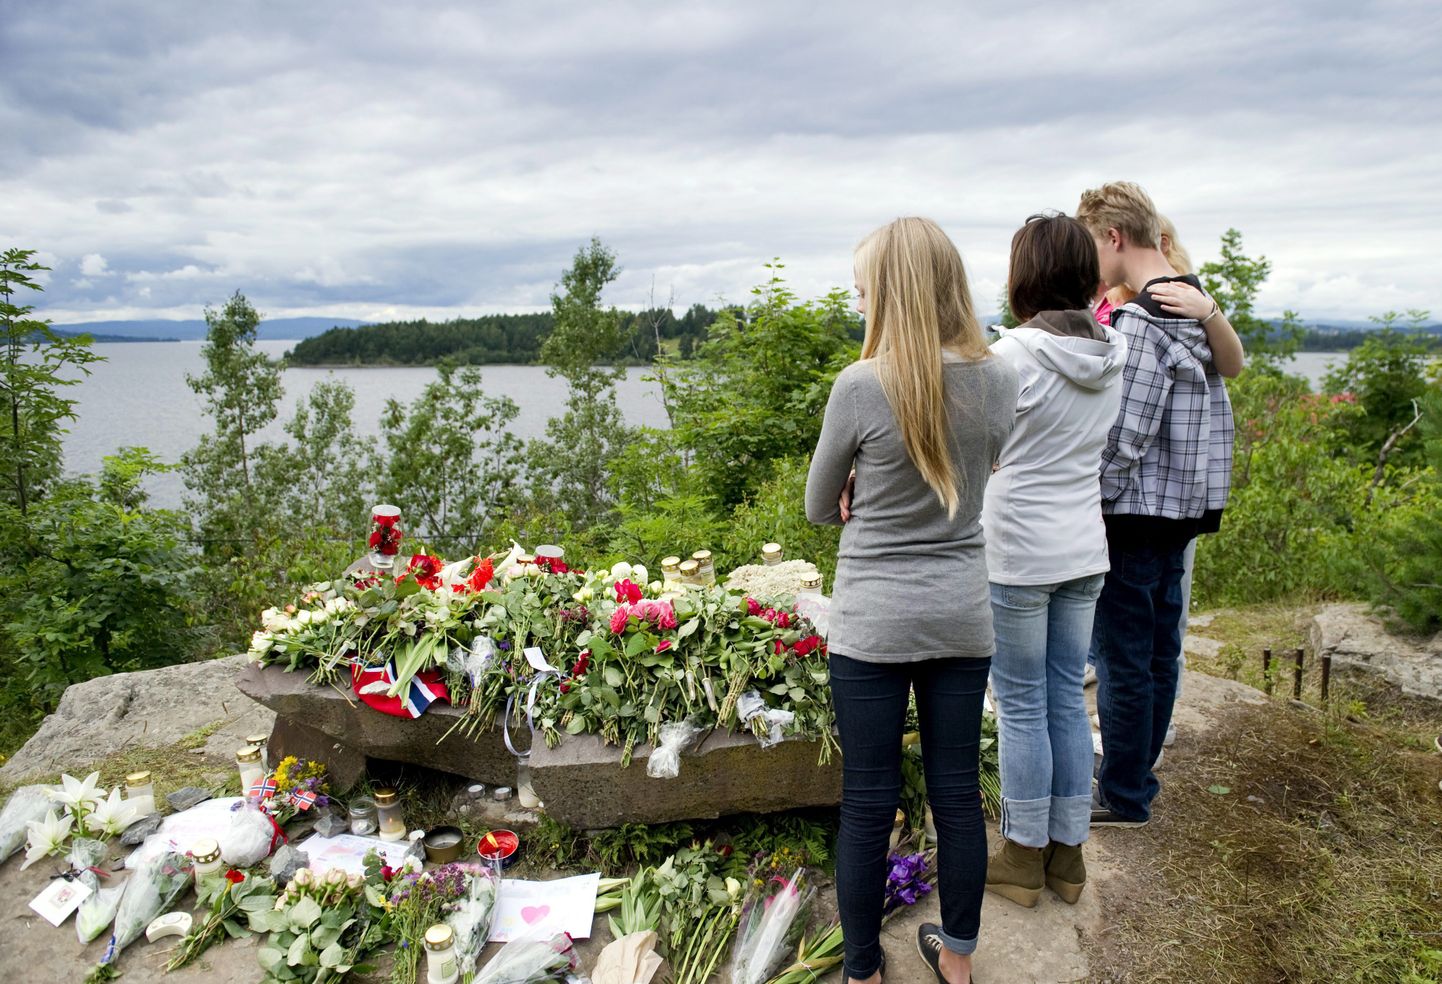 Kuidas rääkida lapsele Norras toimunud traagilistest sündmustest?